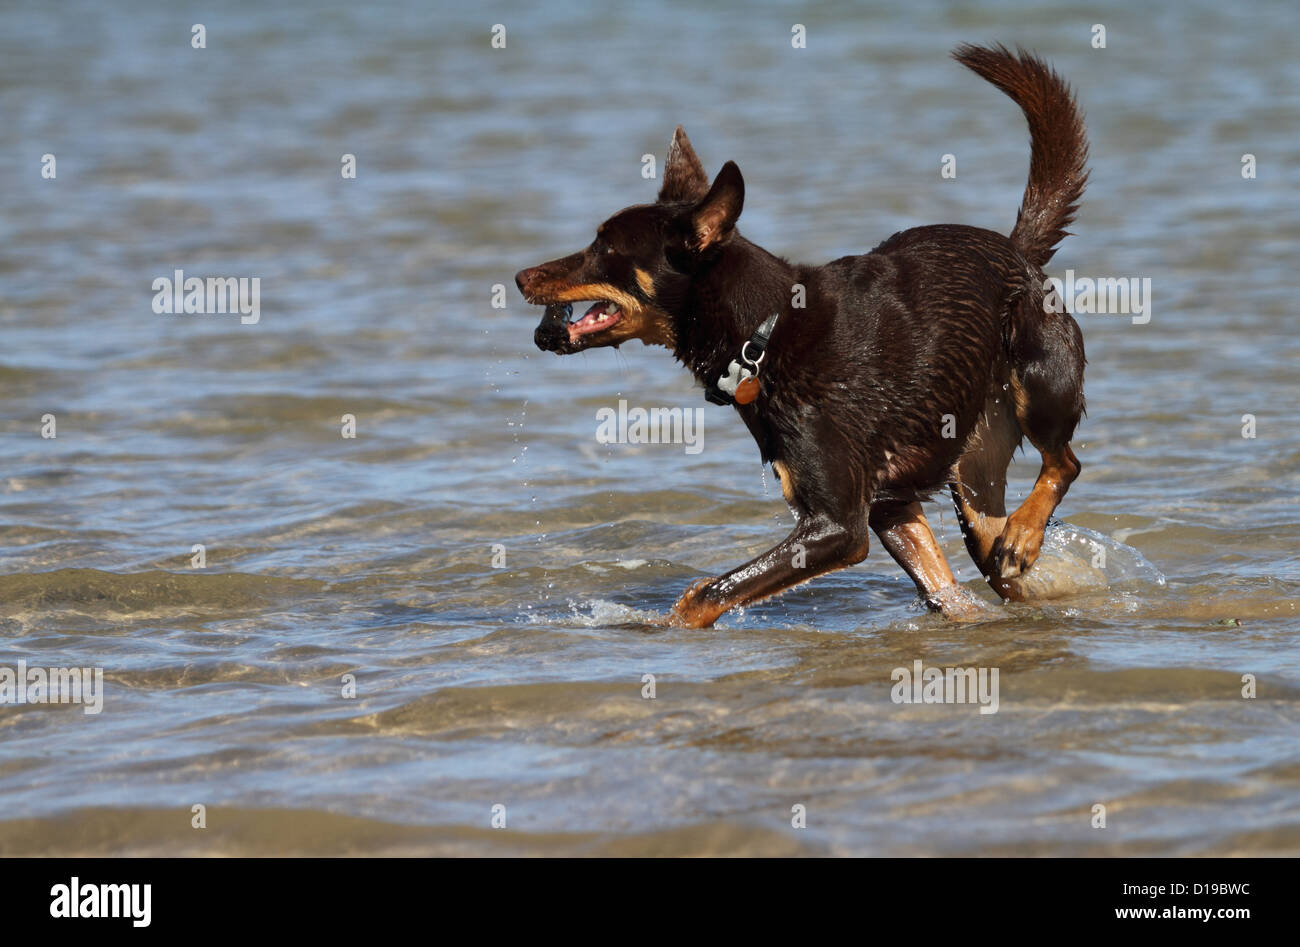 Croix kelpie chien dans de l'eau transportant un bâton Banque D'Images